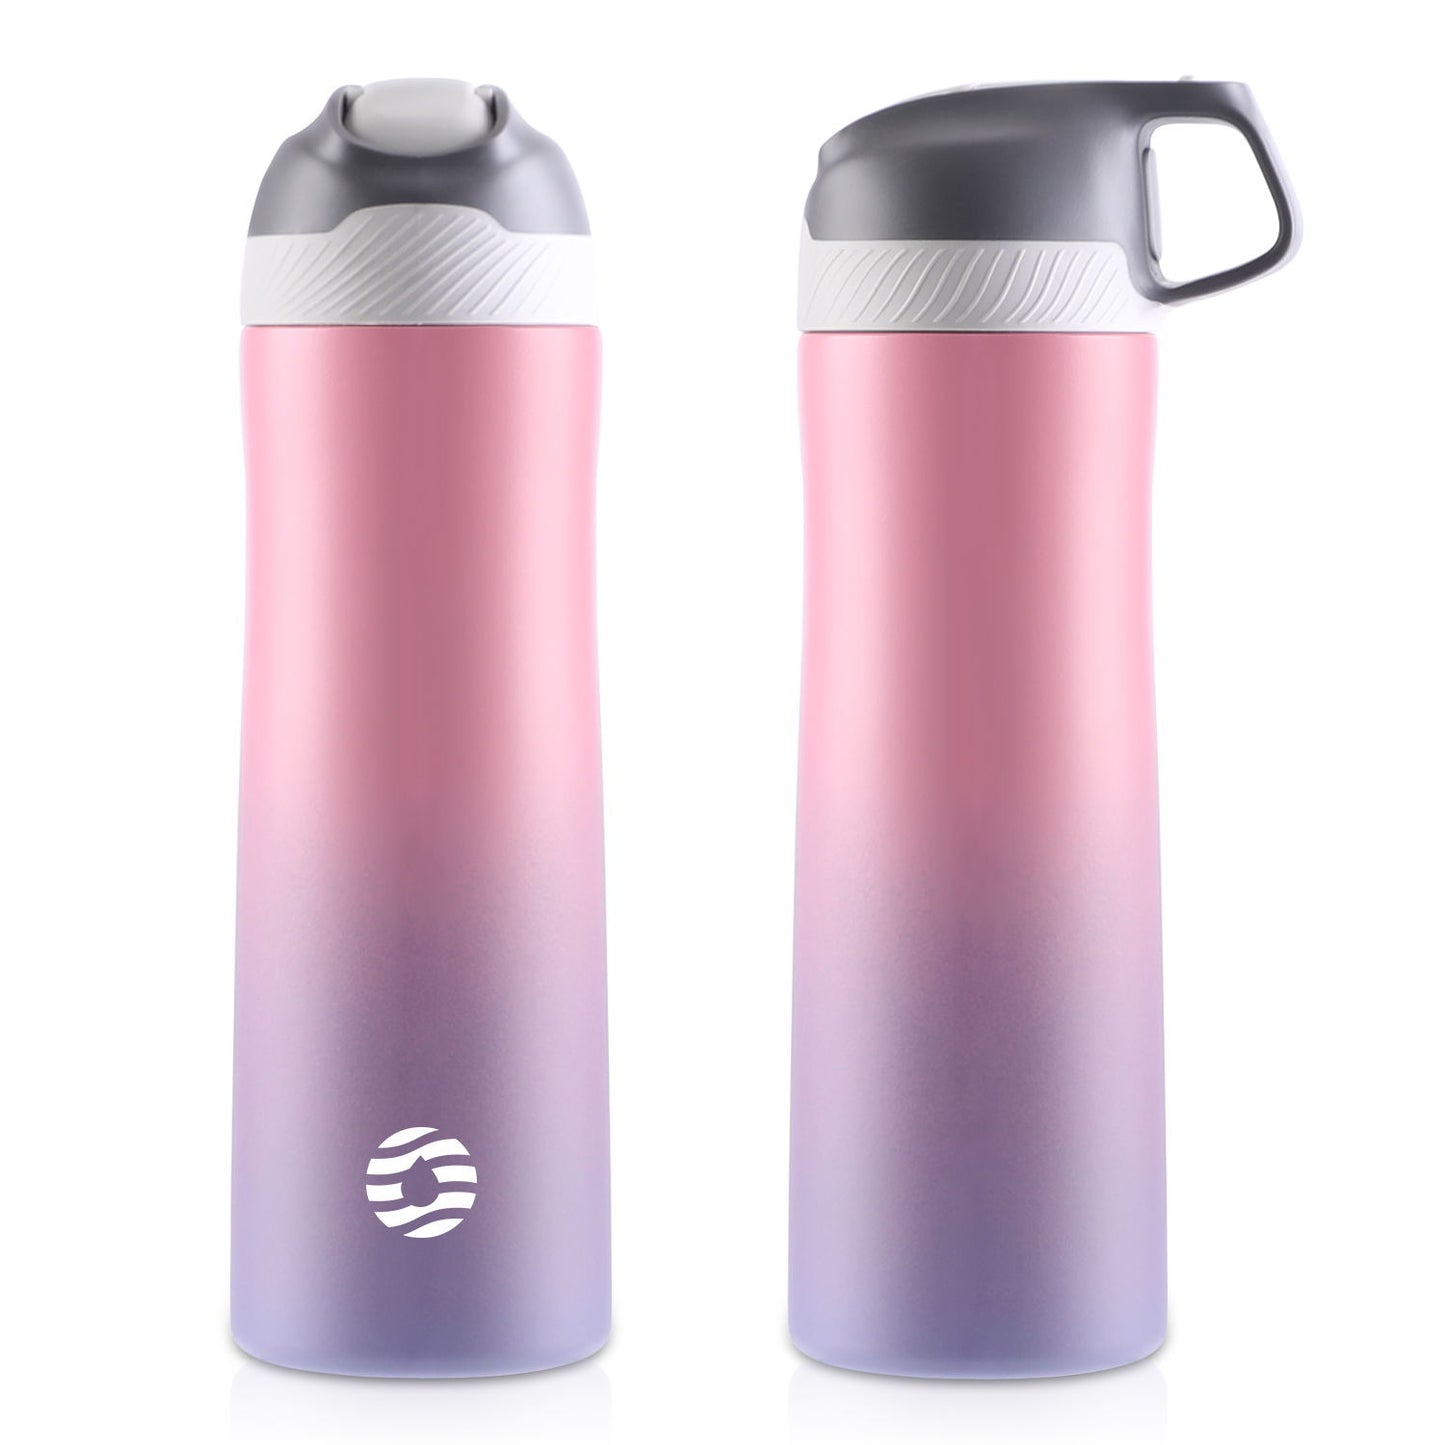 Das Bild zeigt zwei pinke Edelstahl-Thermosflaschen mit einem Farbverlauf von pink zu lila, eine mit geschlossenem und eine mit integriertem Griff im Deckel.